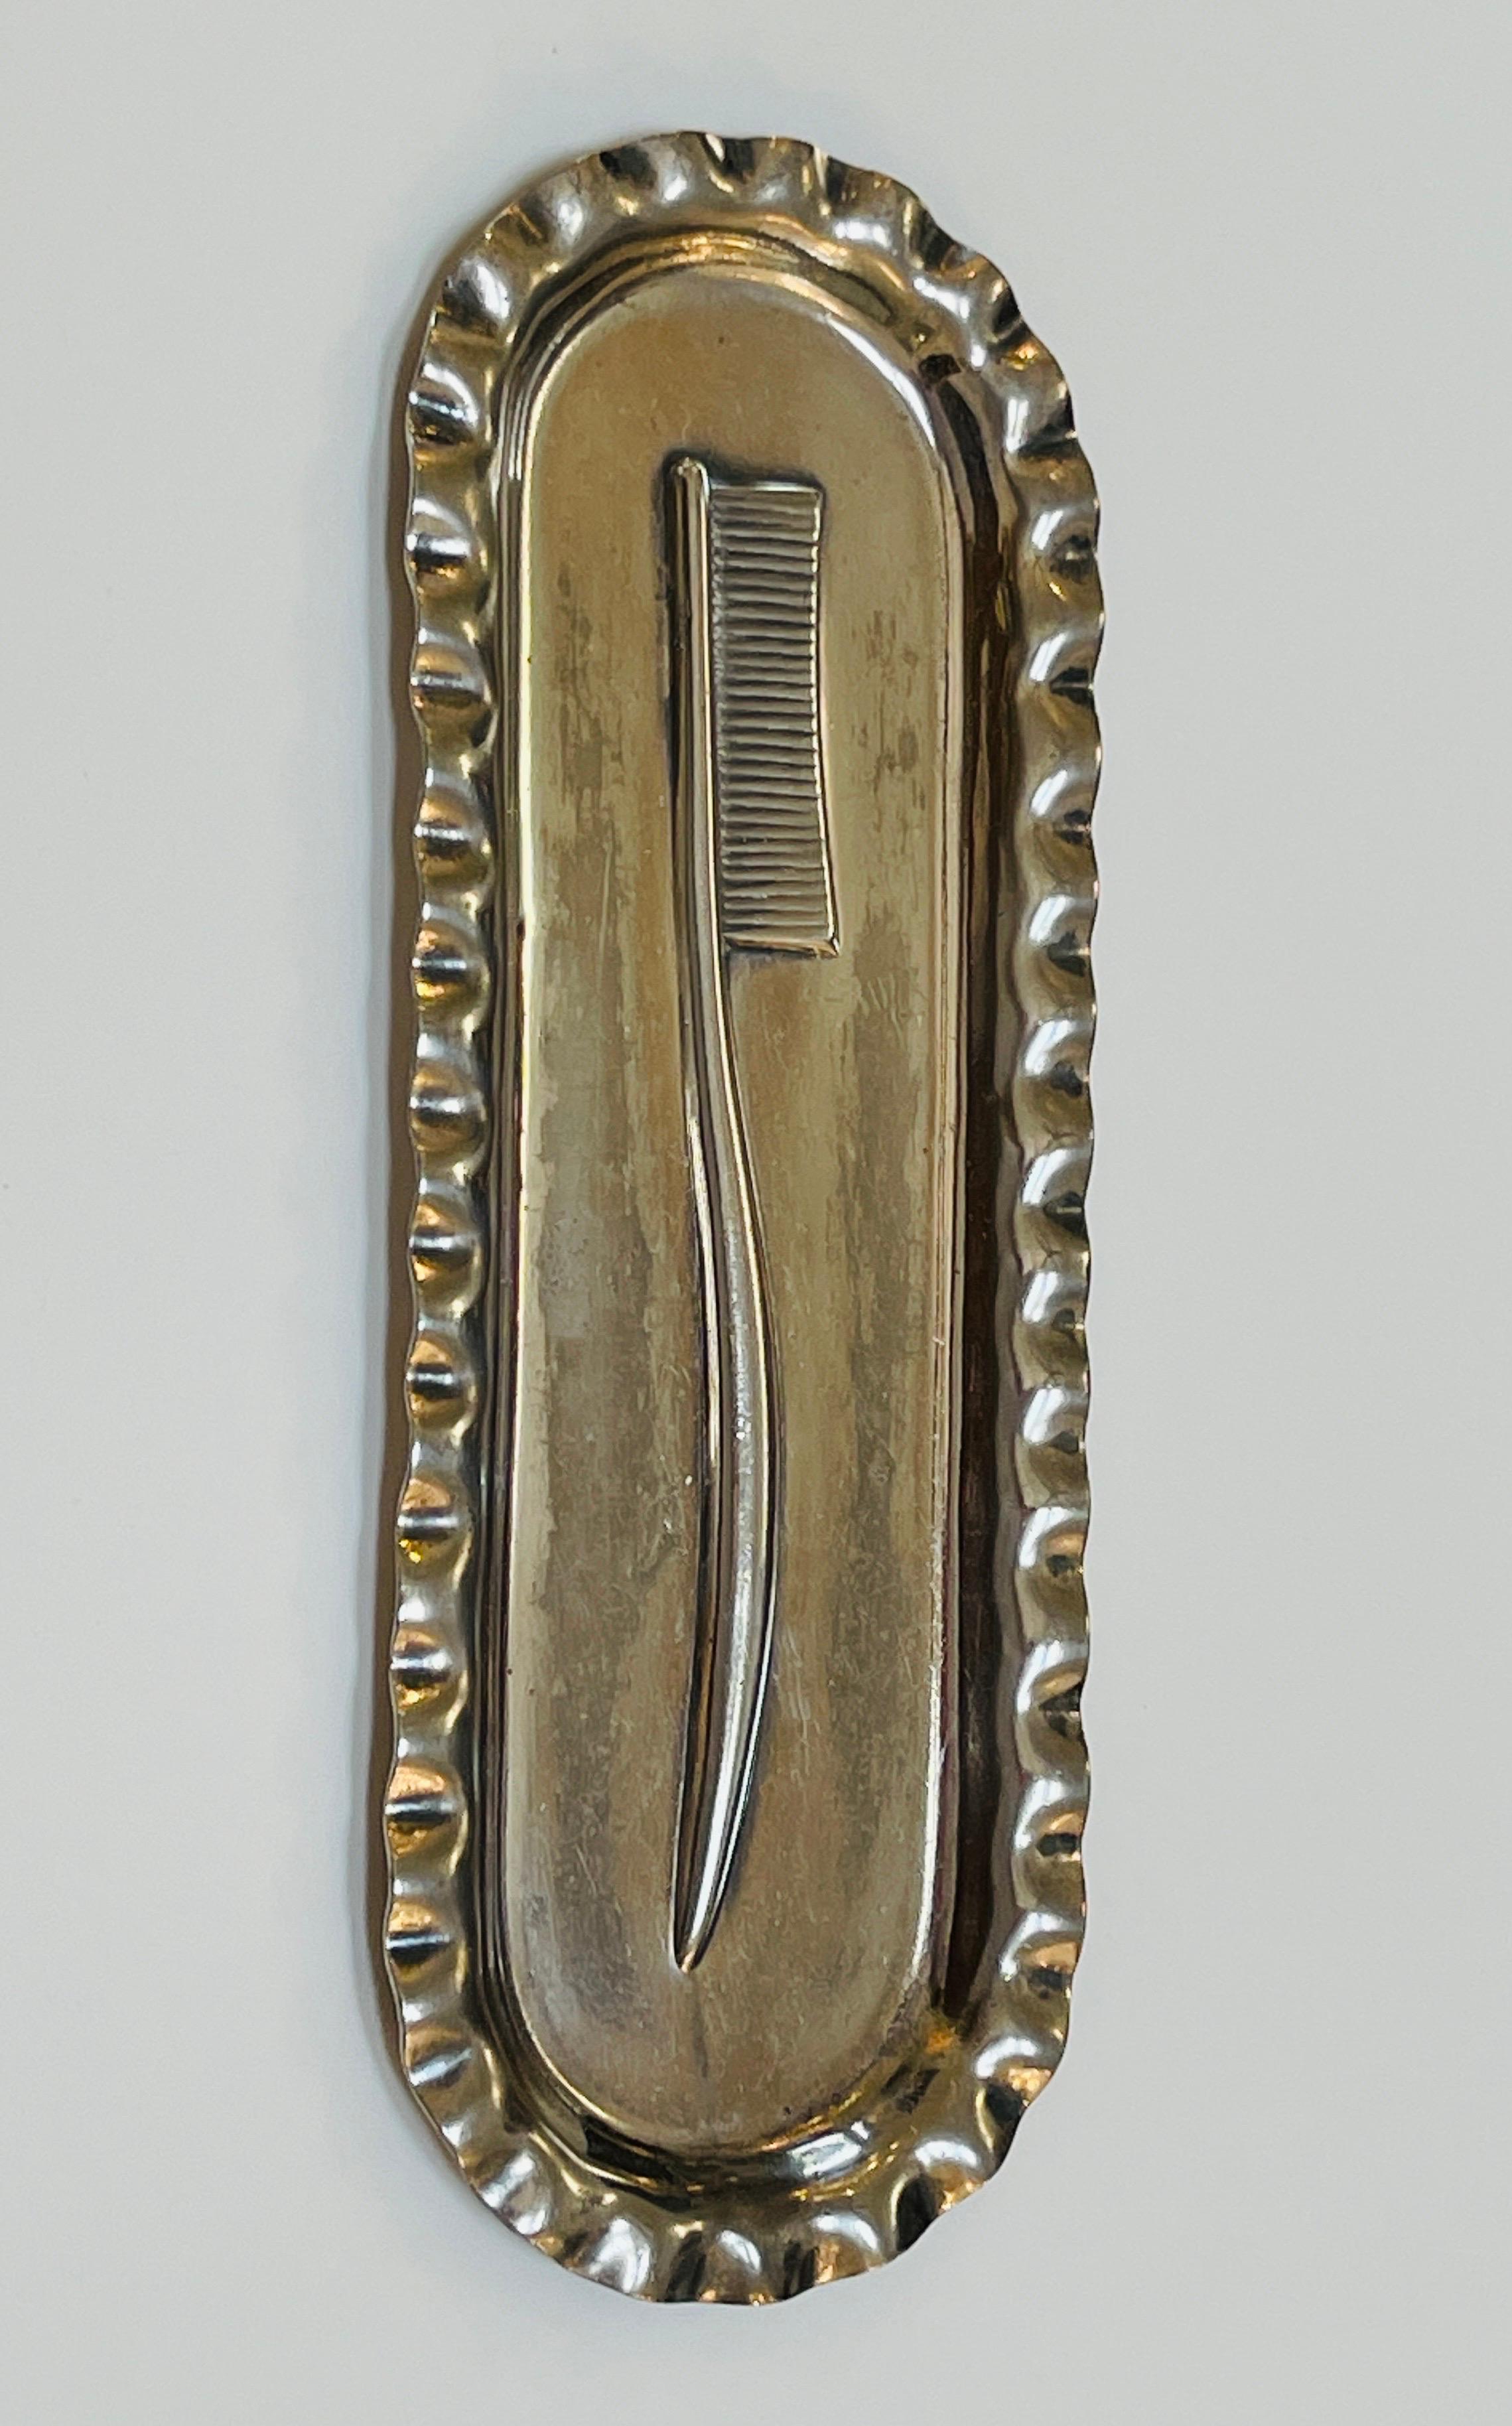 1900 toothbrush